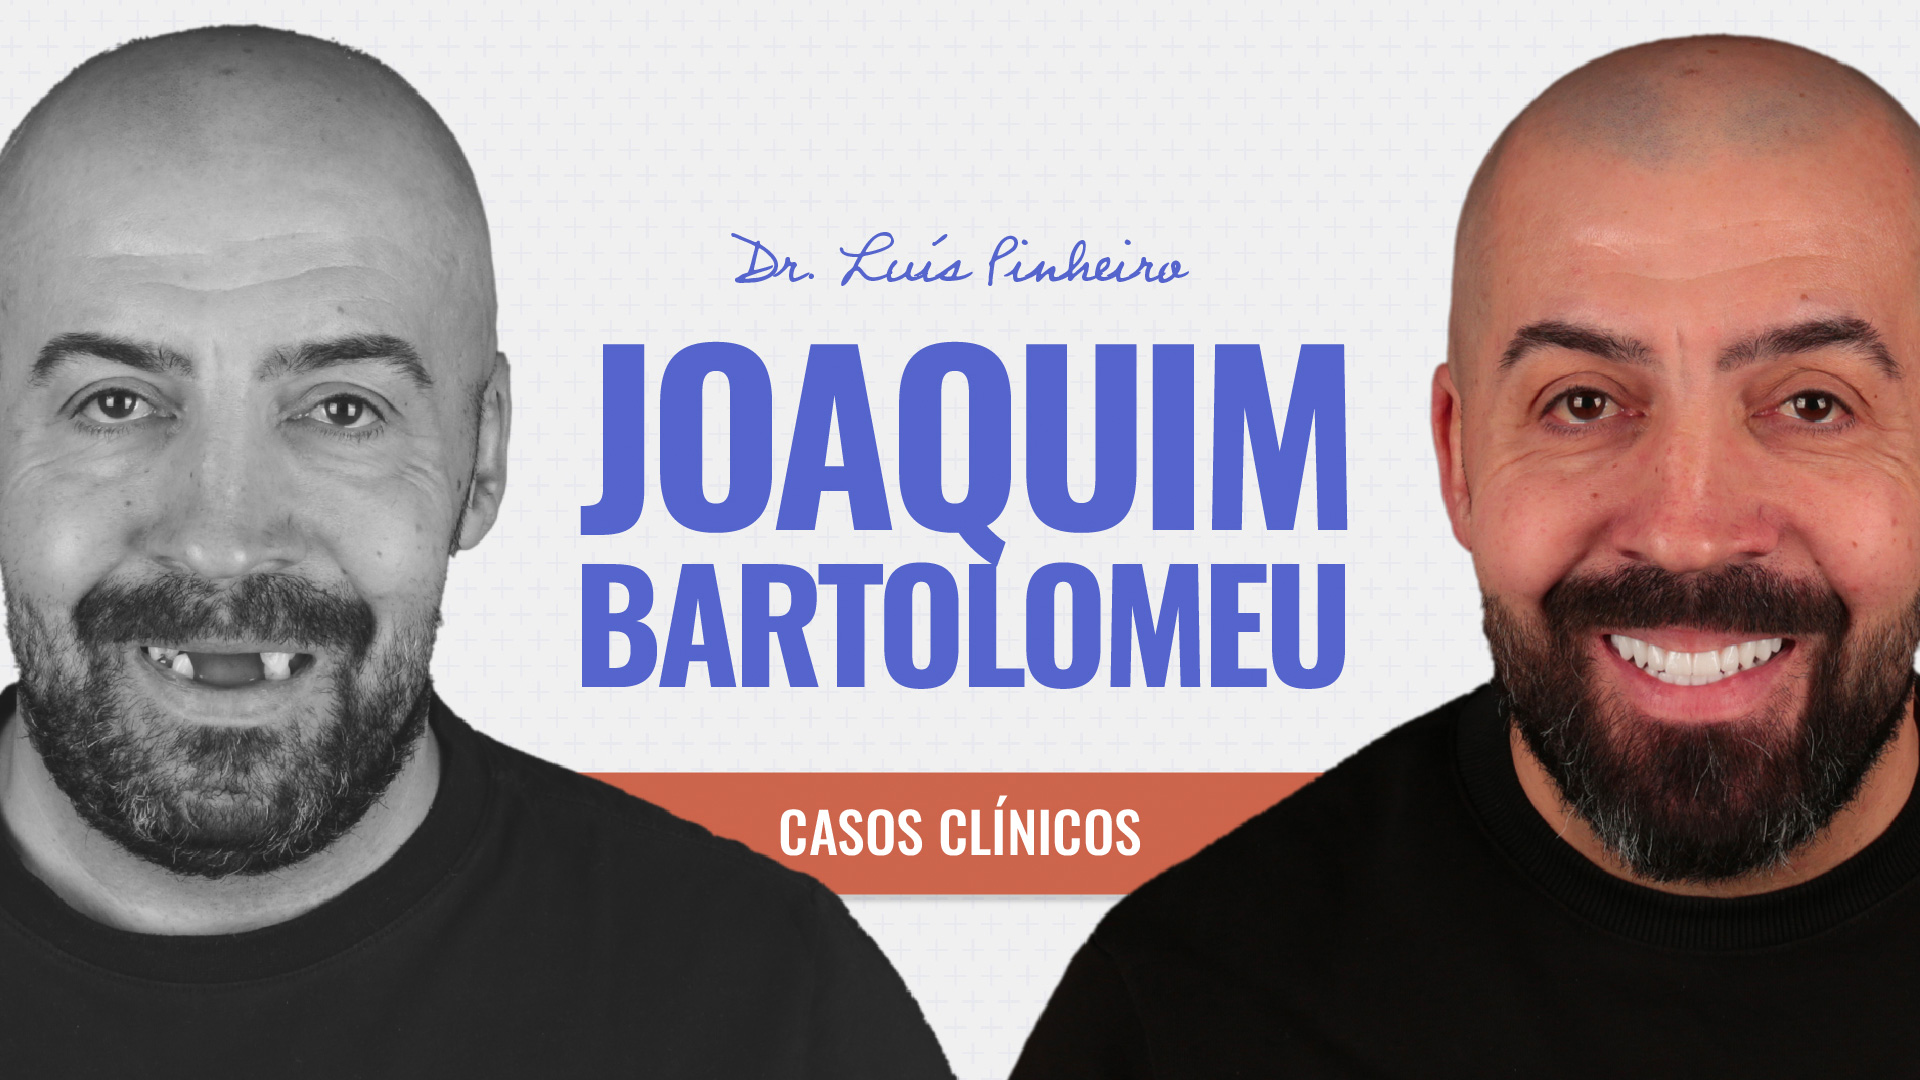 Caso clínico – Joaquim Bartolomeu